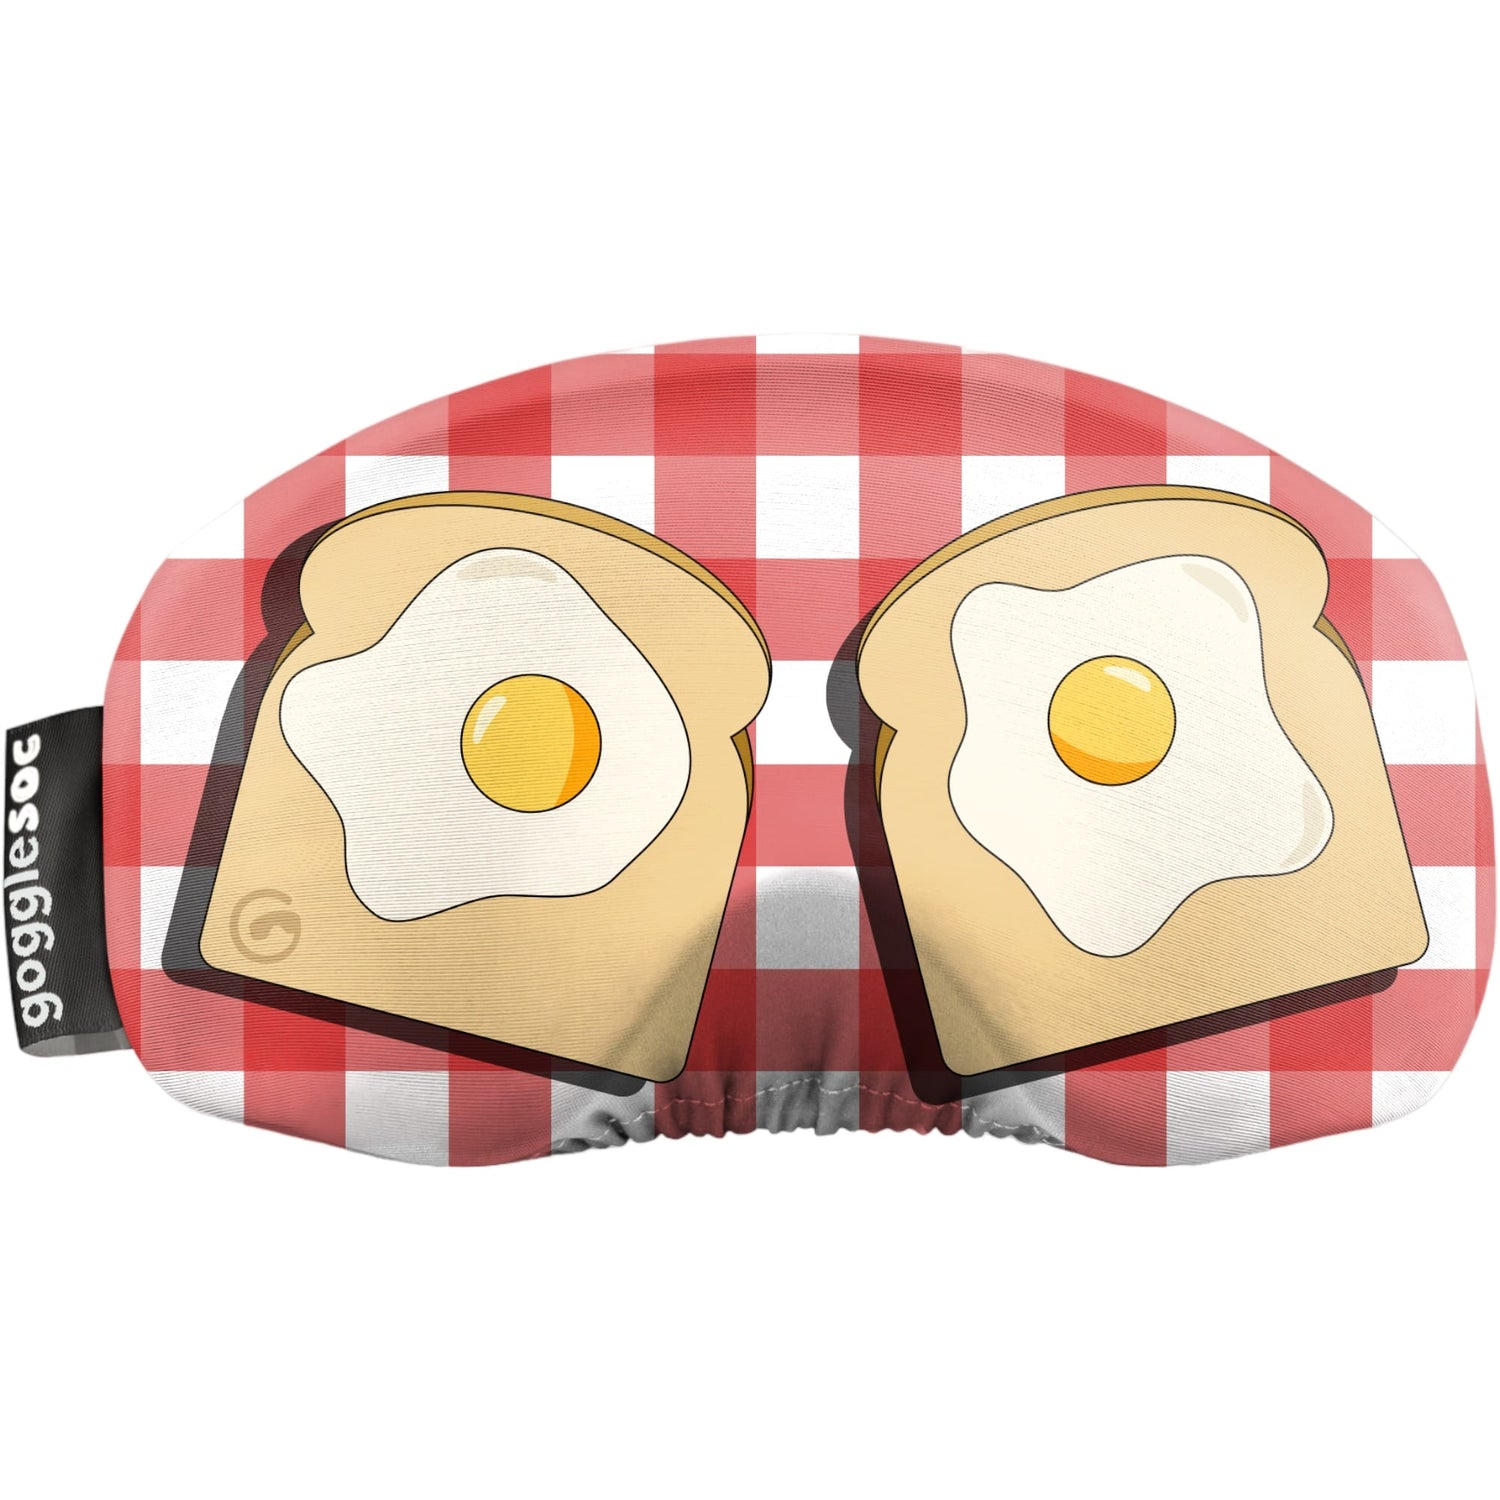 Eggs On Toast Soc-swatch